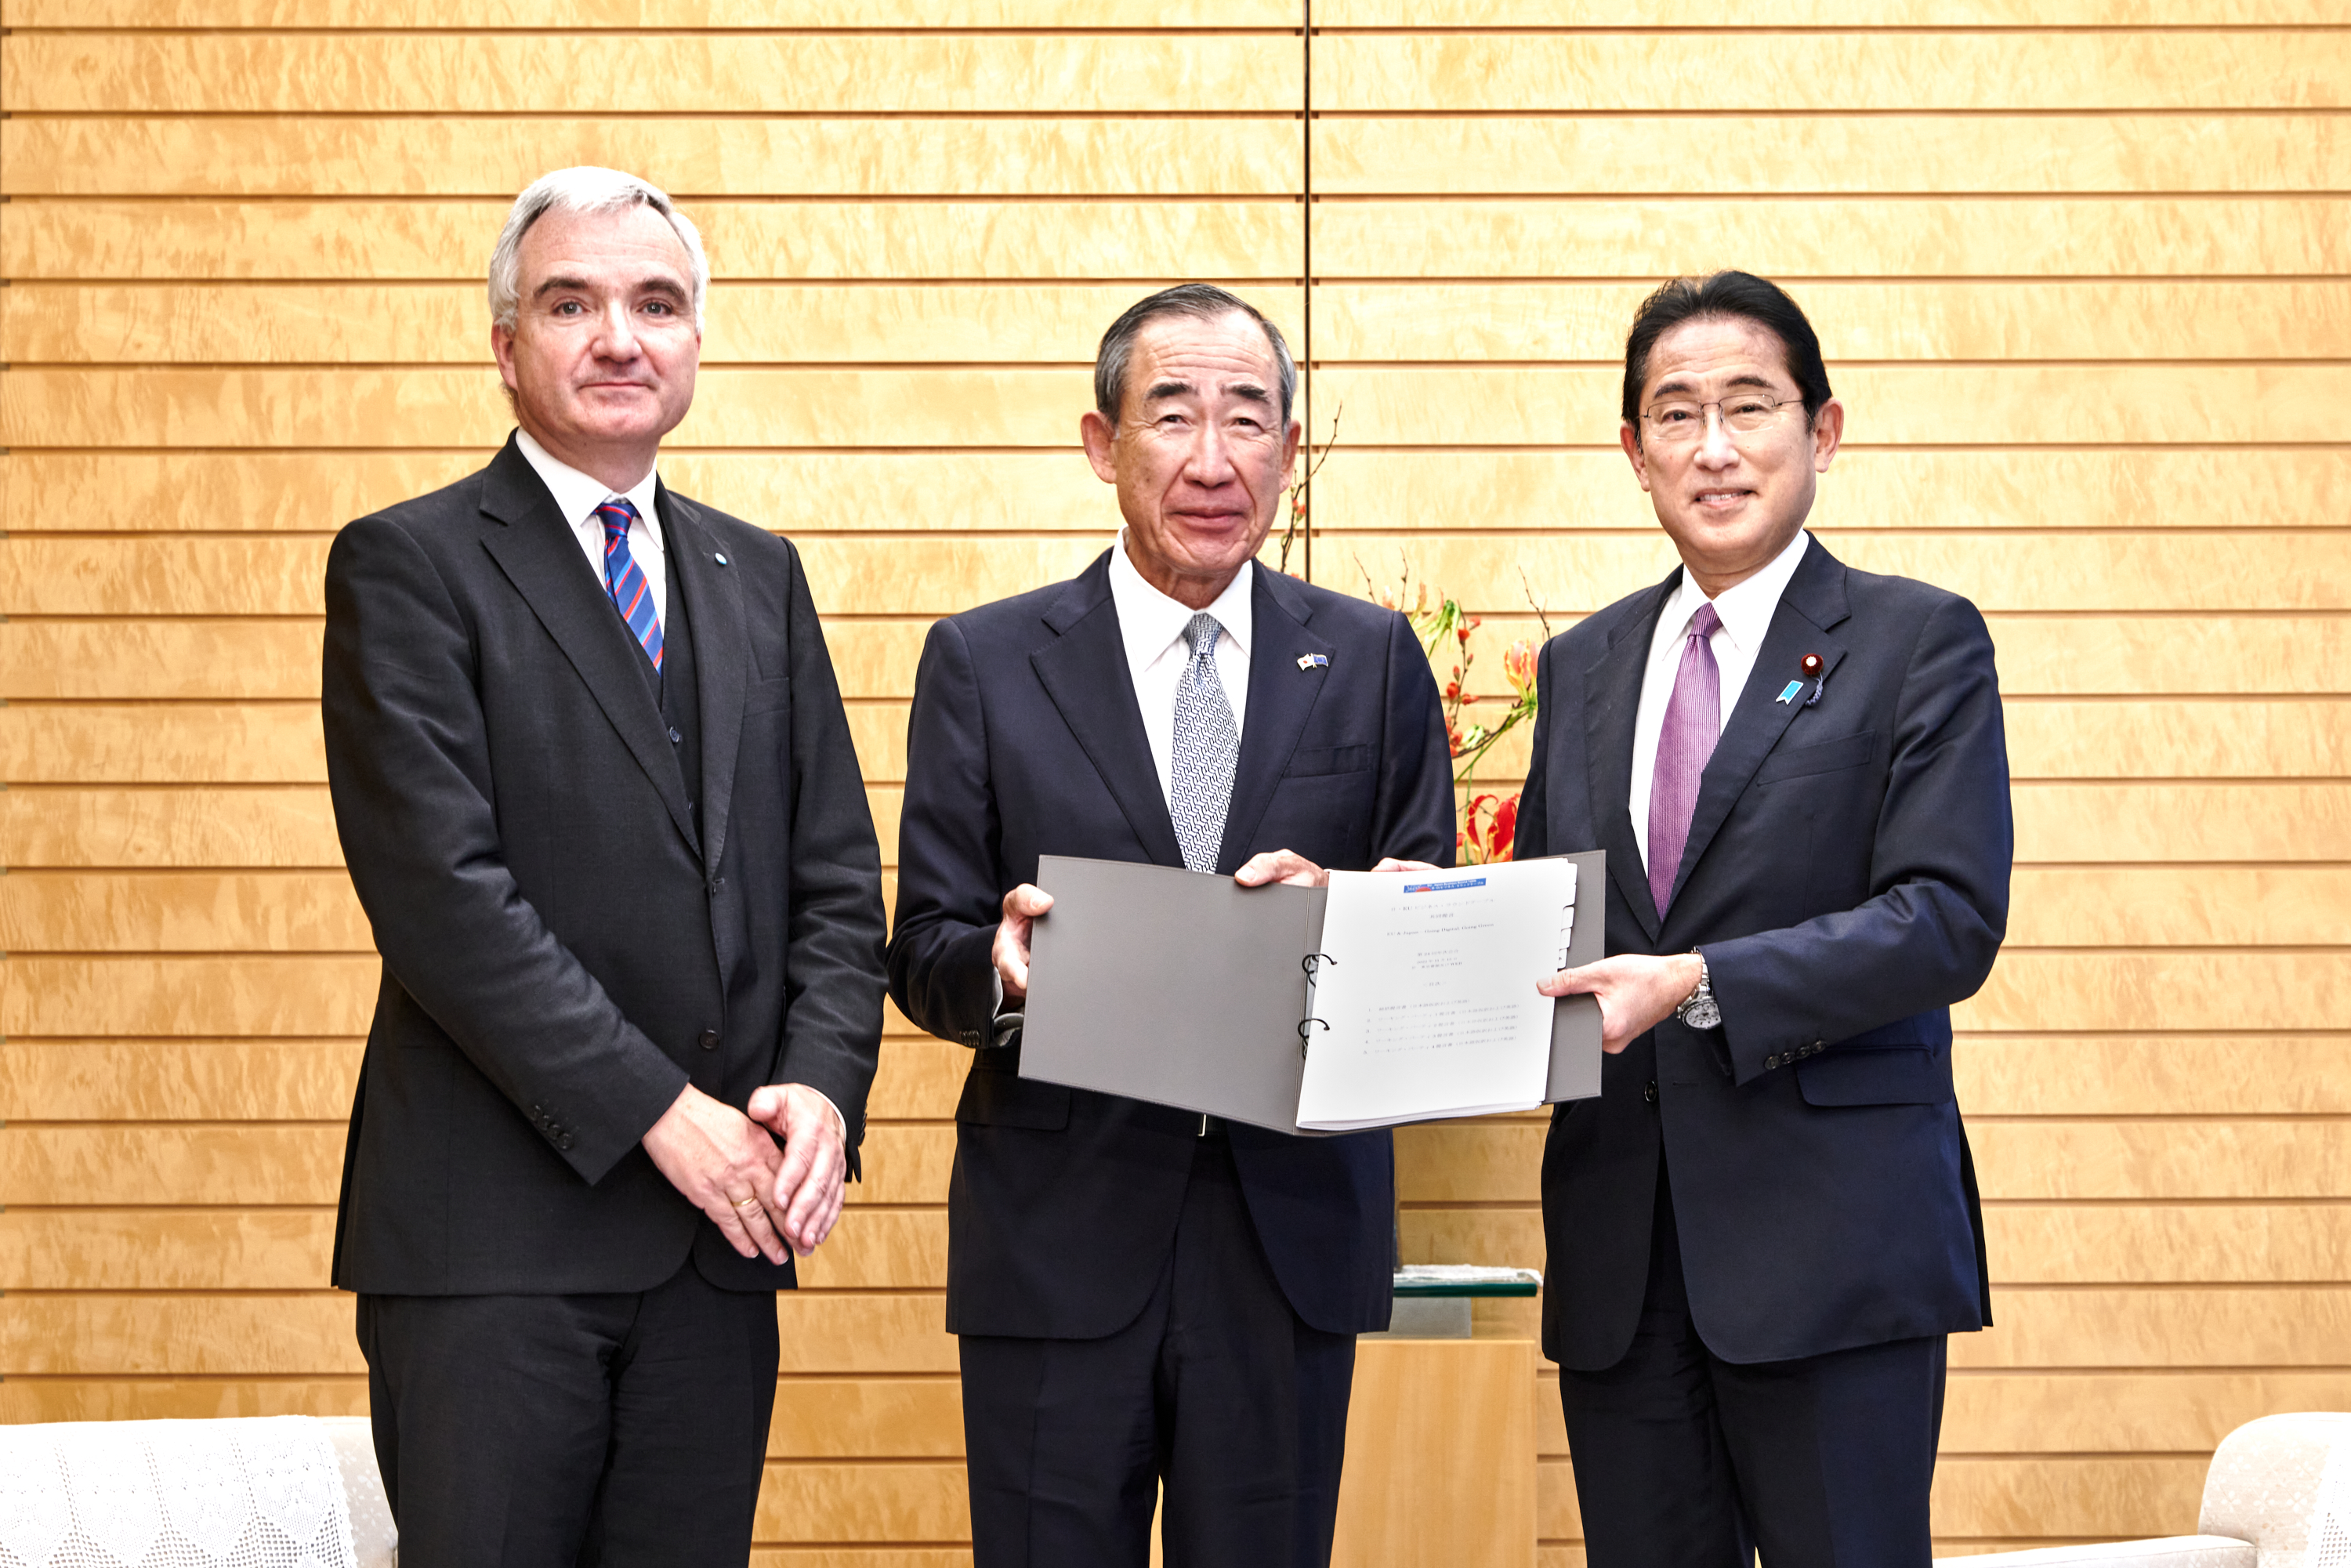 左から: ボルツェEU側共同議長代理、柵山前日本側共同議長、岸田総理